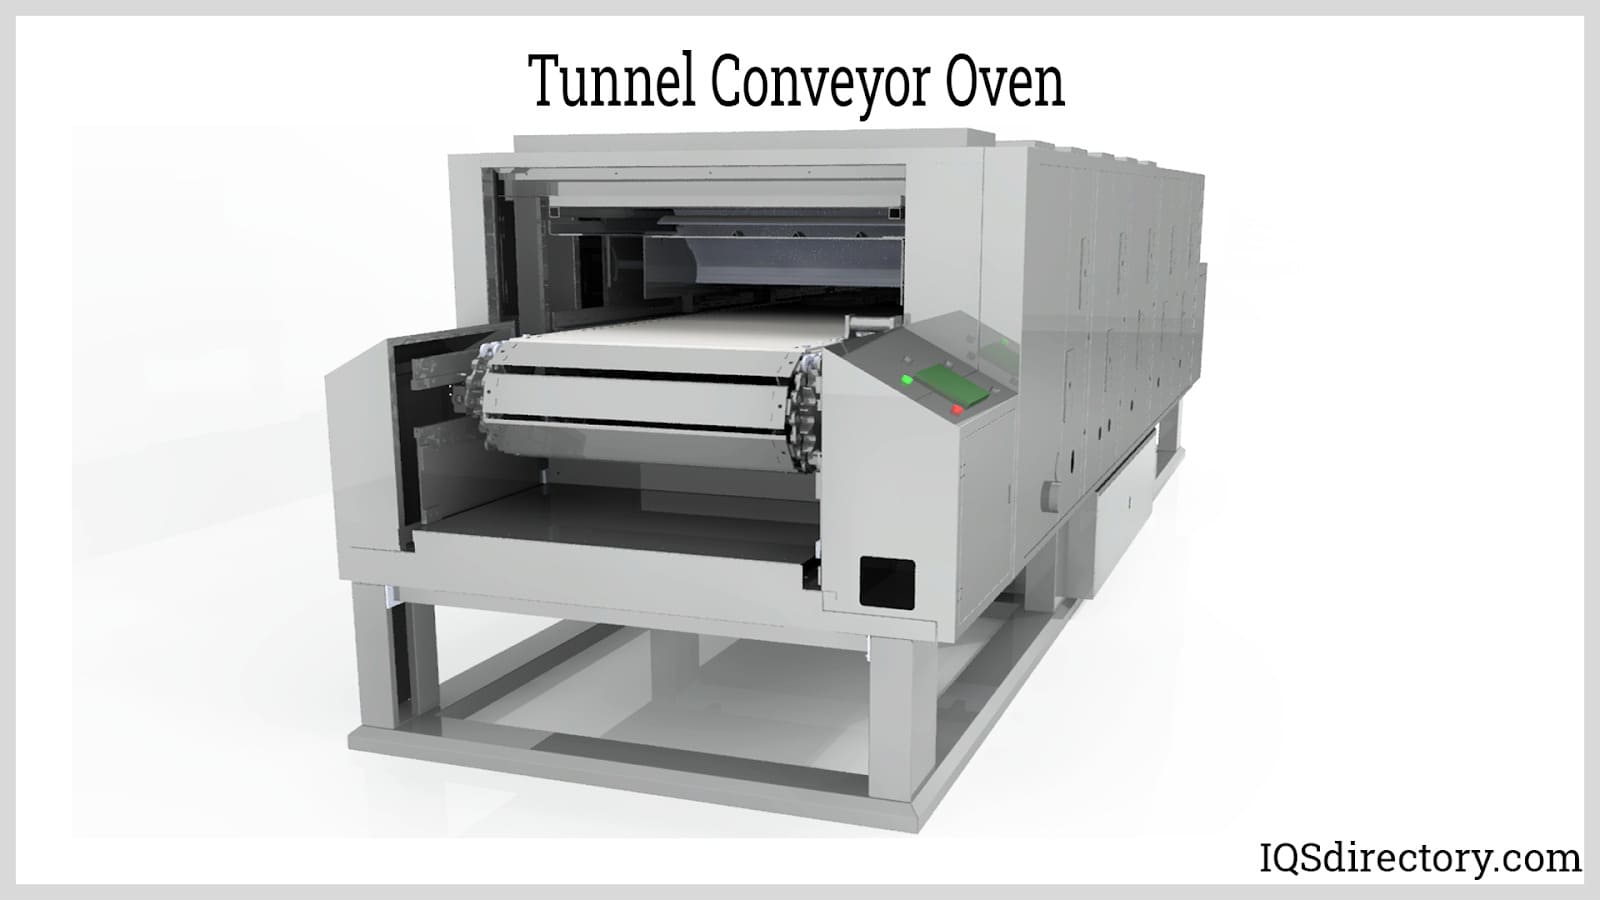 Tunnel Conveyor Oven